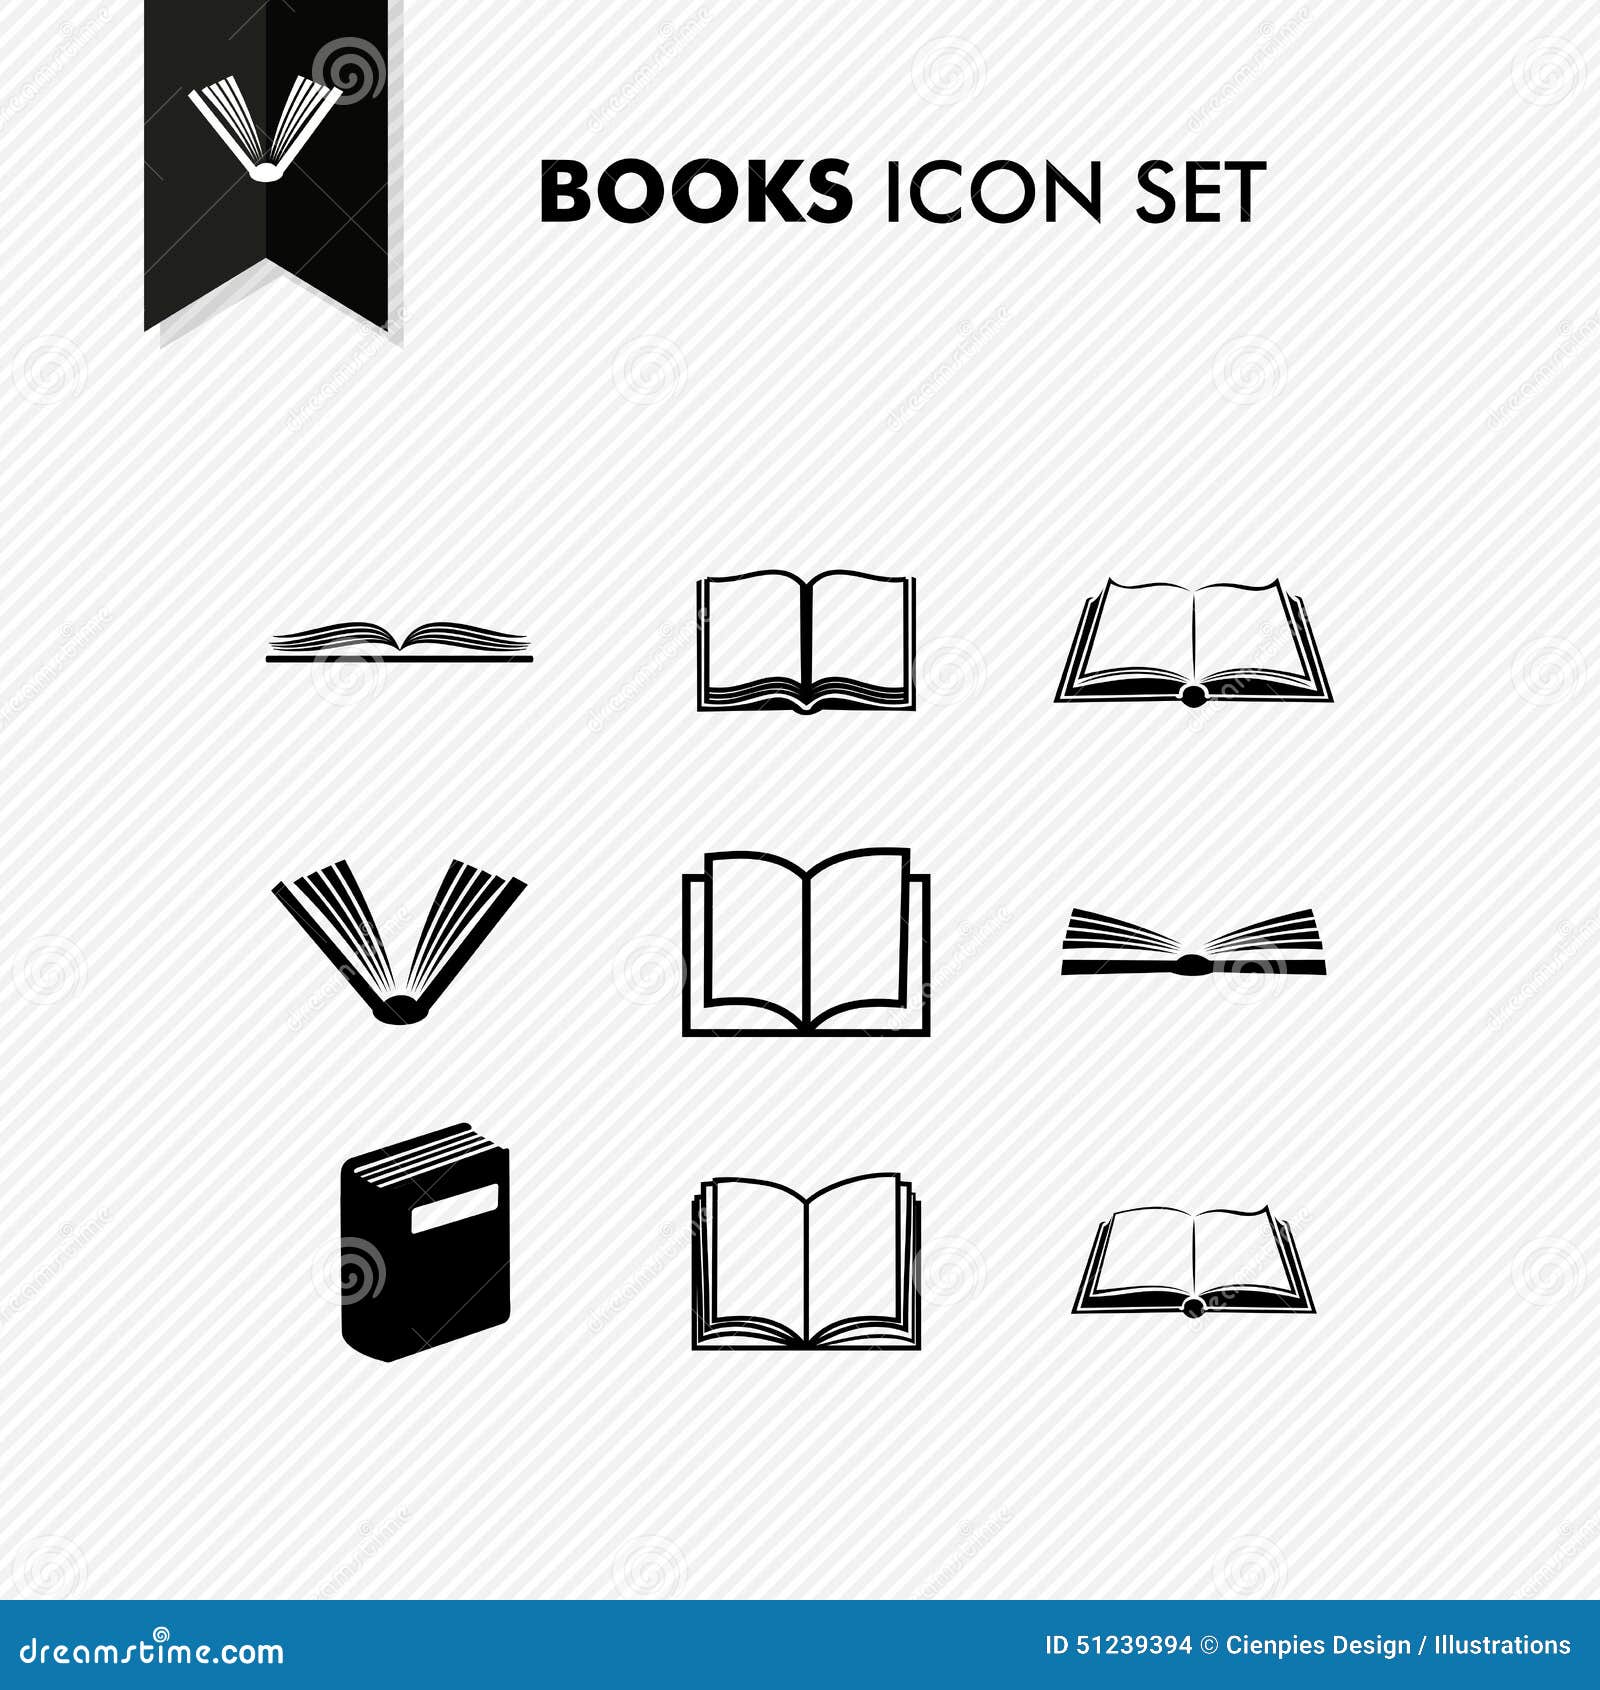 basic books icon set 